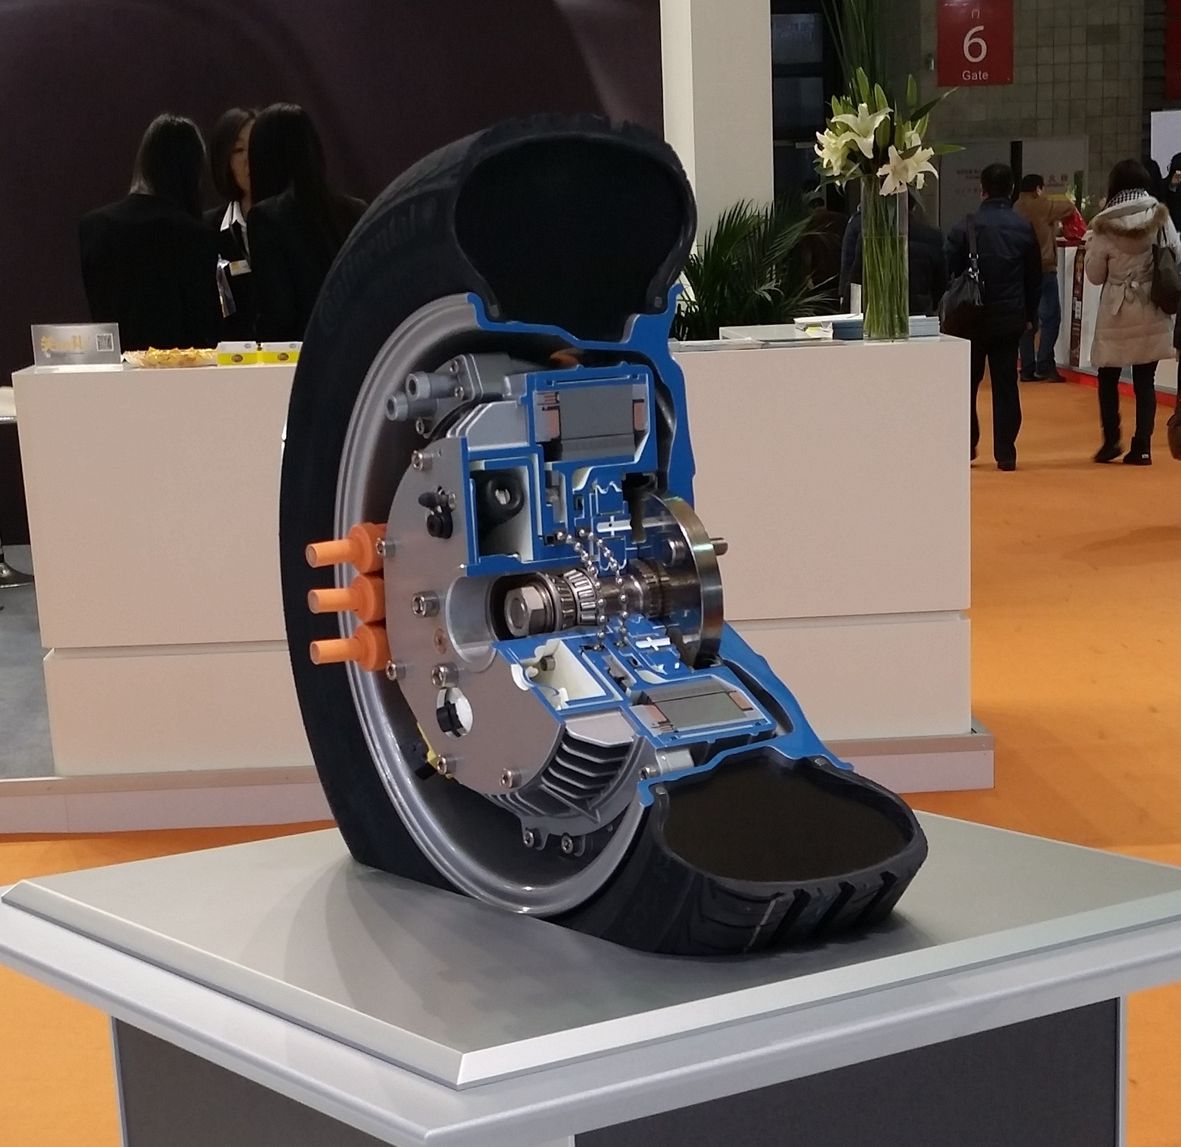 舍弗勒大中华区电驱动工程师团队独立研发出轮内电机驱动模块。